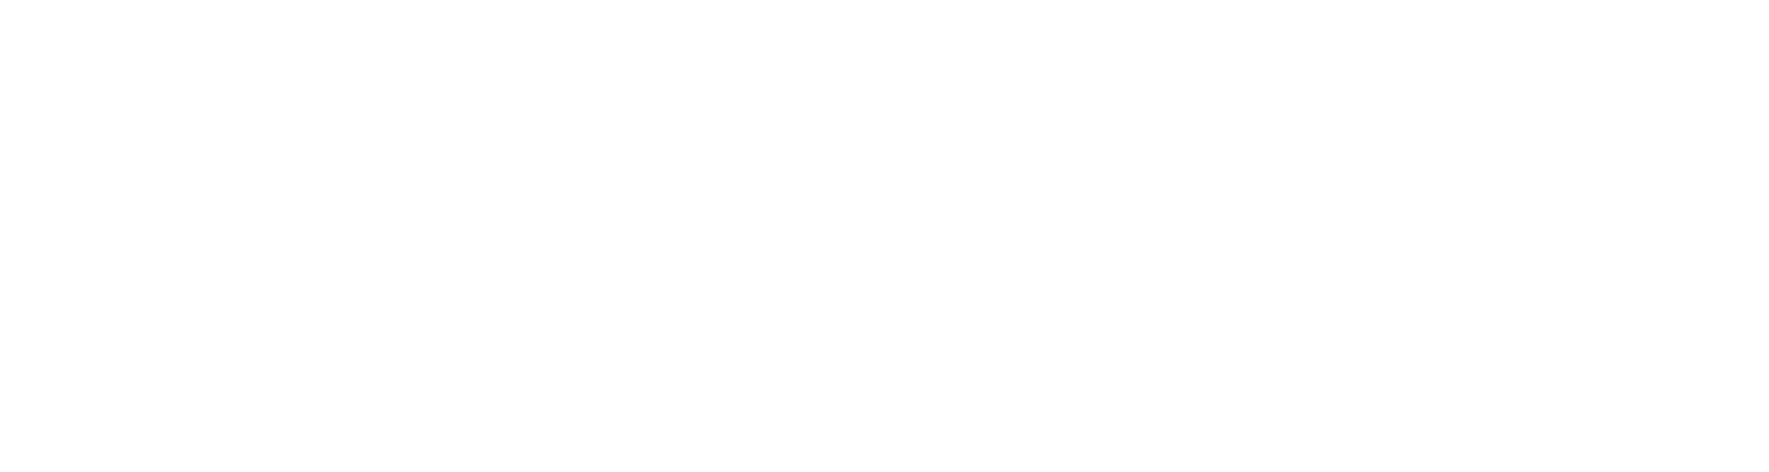 Windward logo with tagline